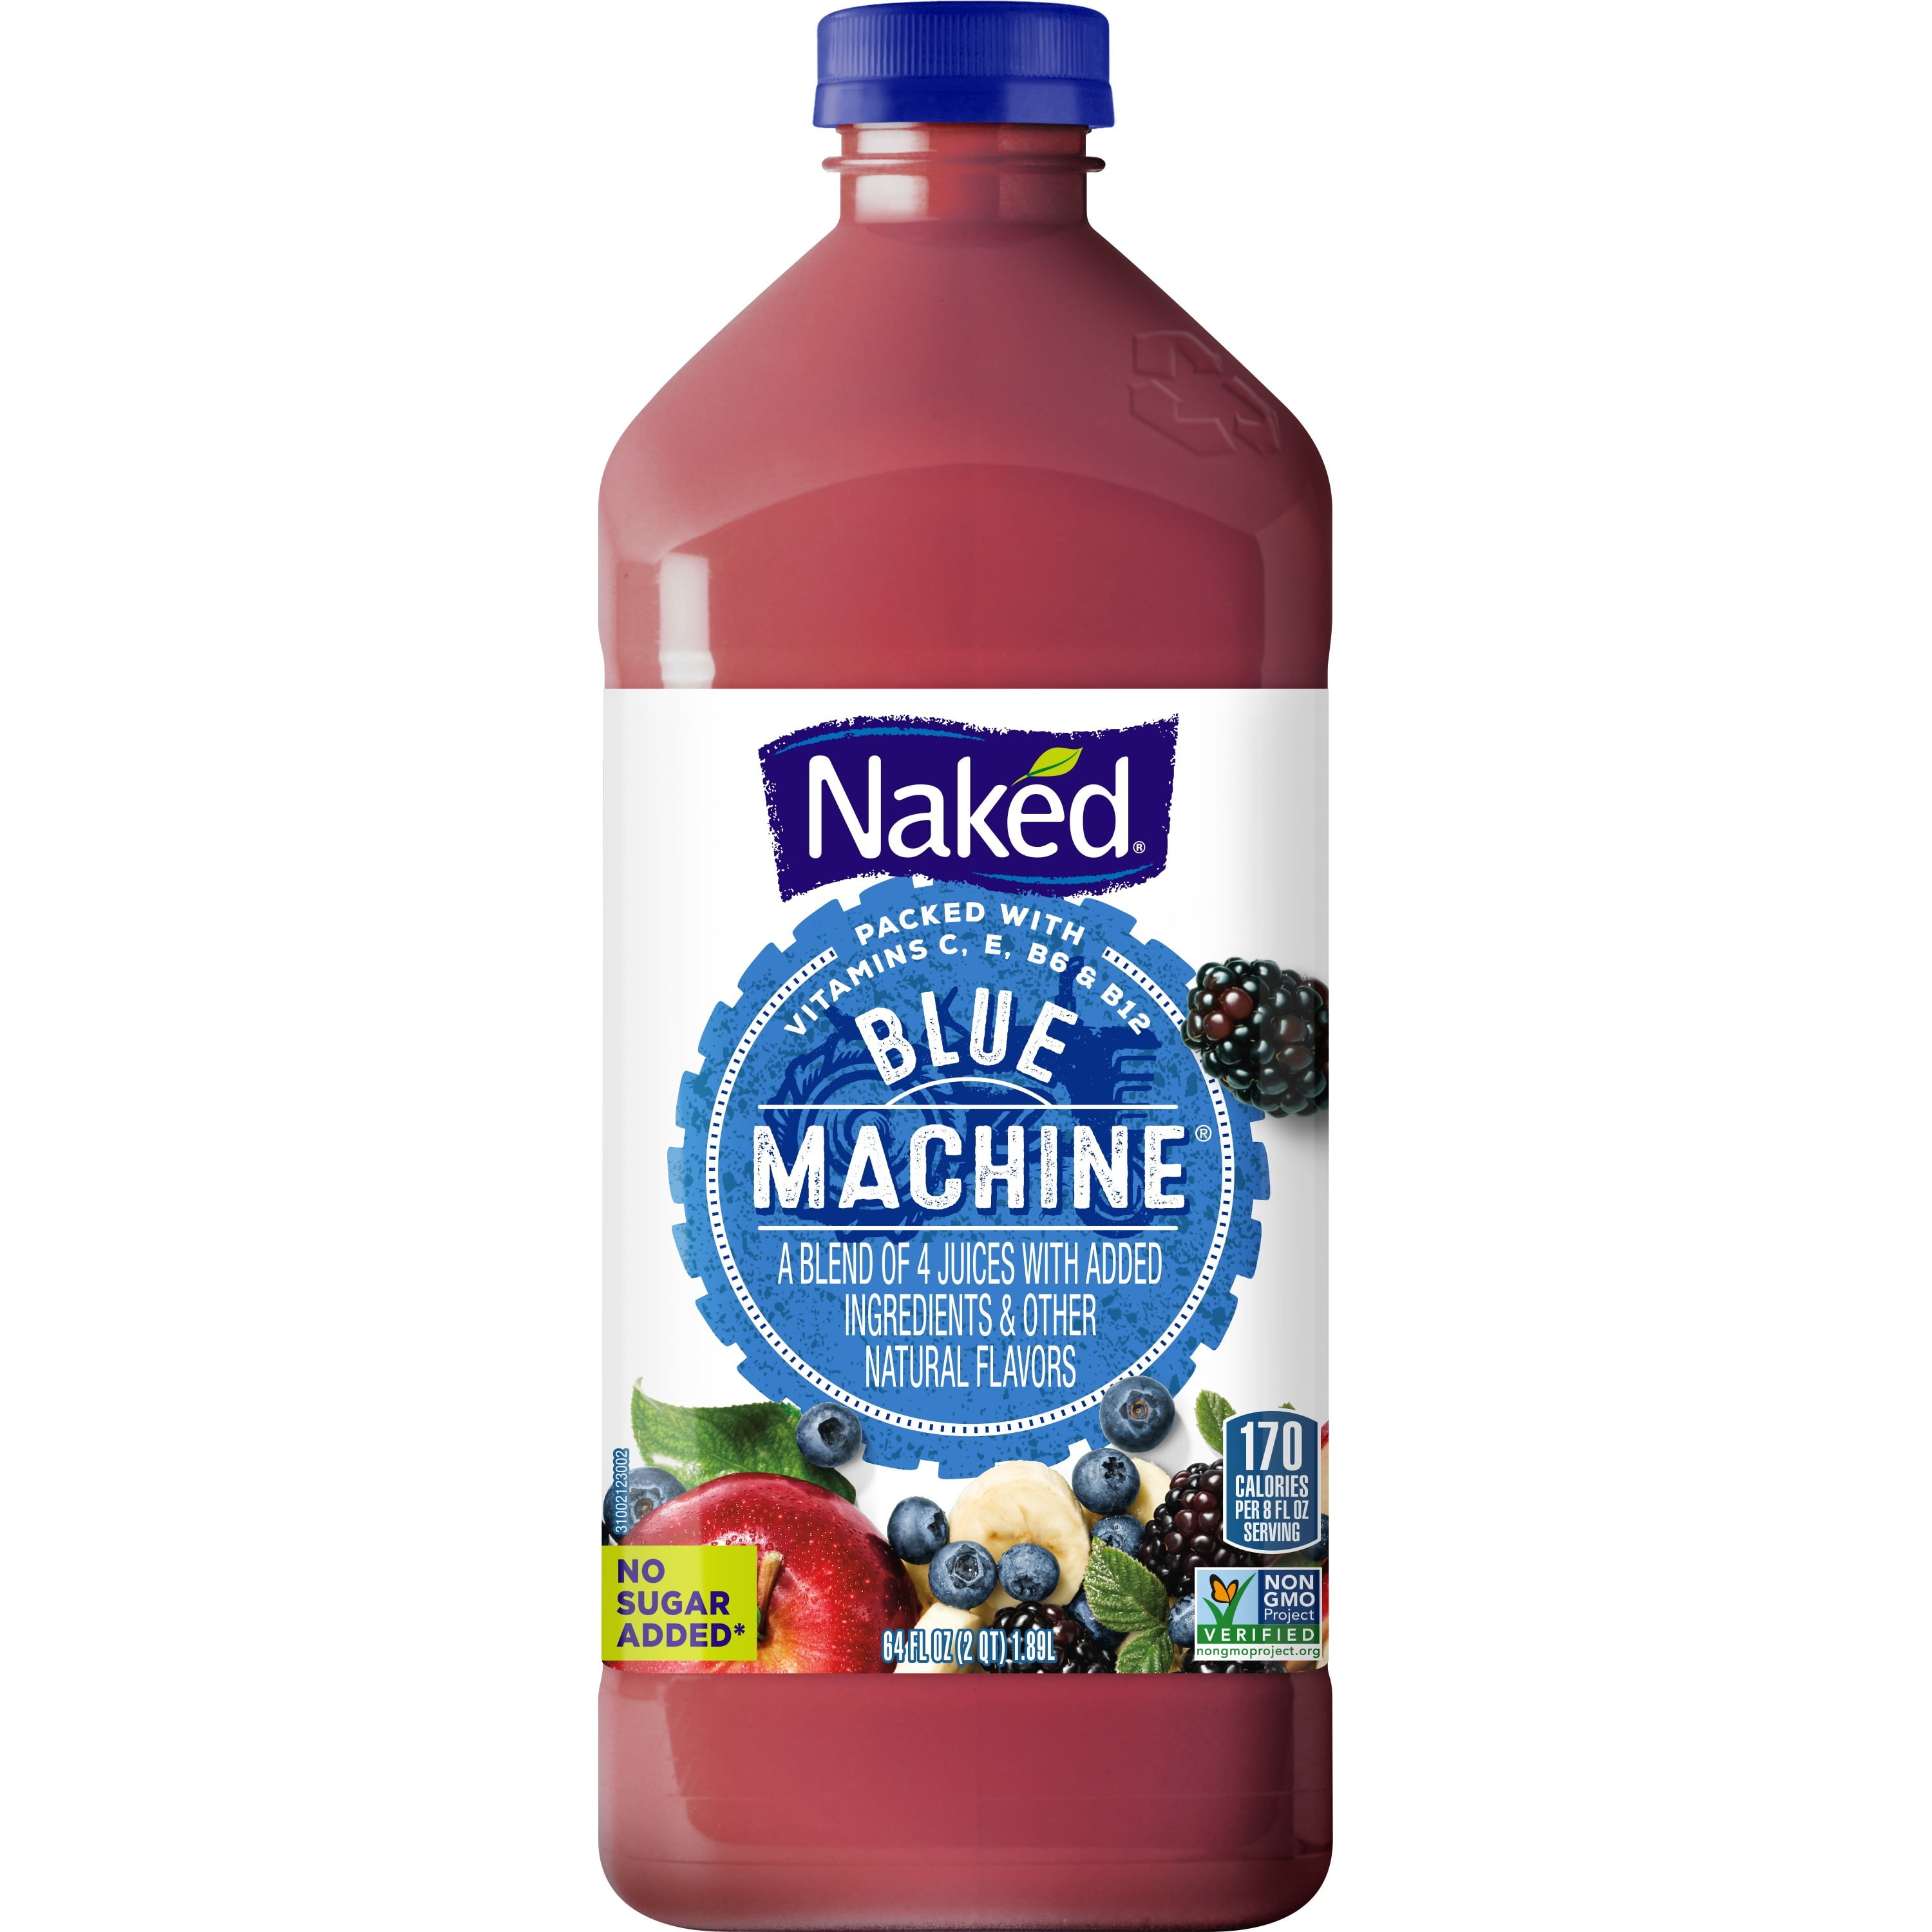 Naked % Juice Blue Machine - Paradise Liquor Mini Mart, Phoenix, AZ,  Phoenix, AZ